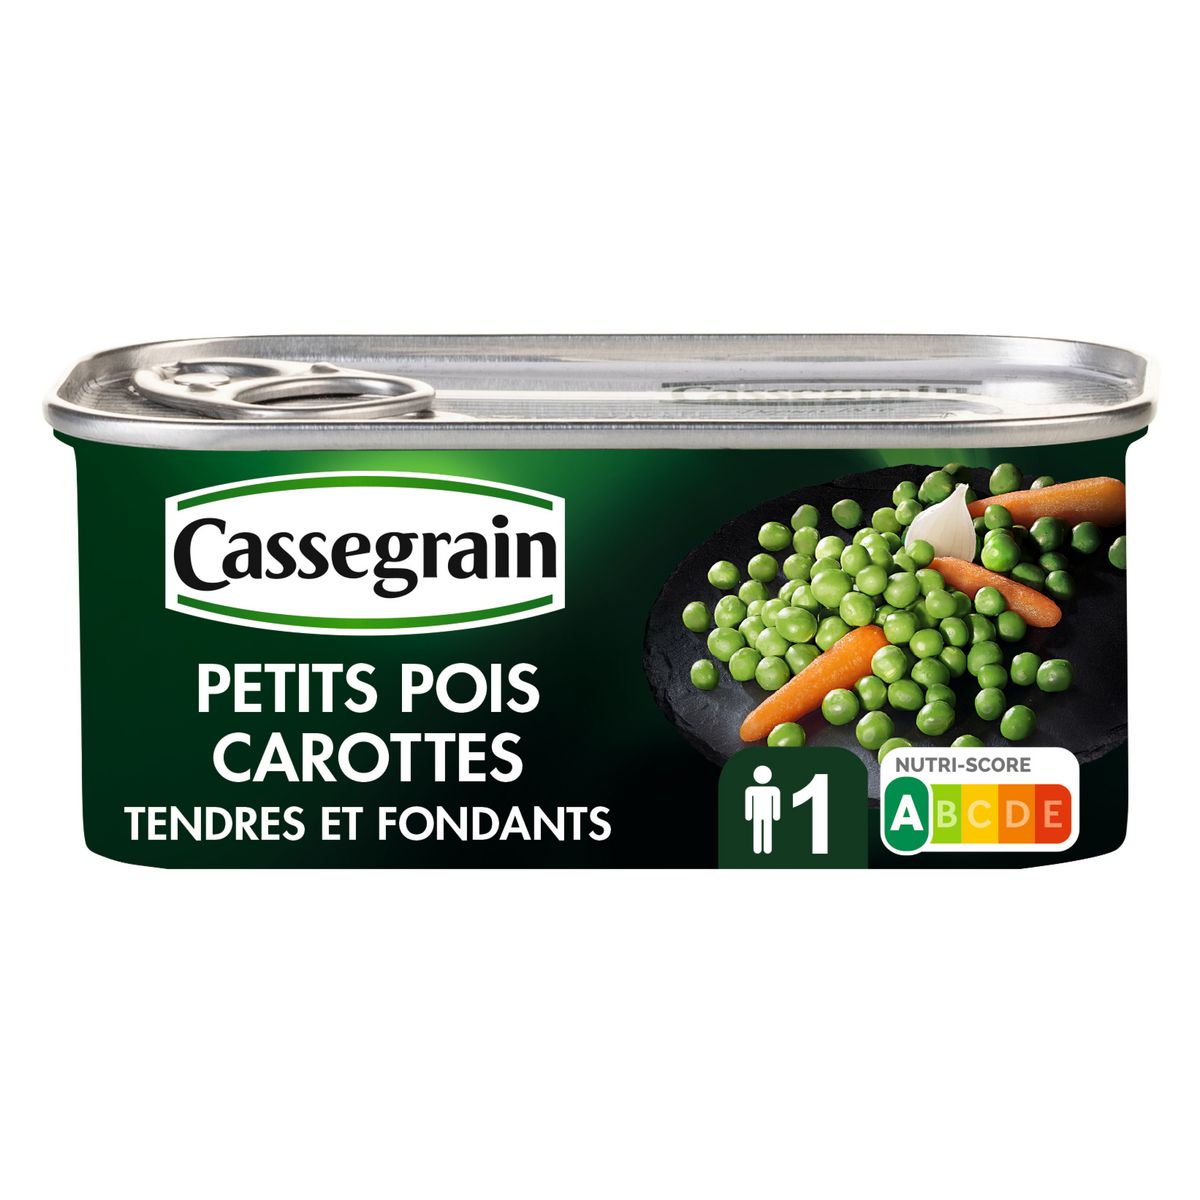 CASSEGRAIN Petits pois carottes tendres et fondants 130g